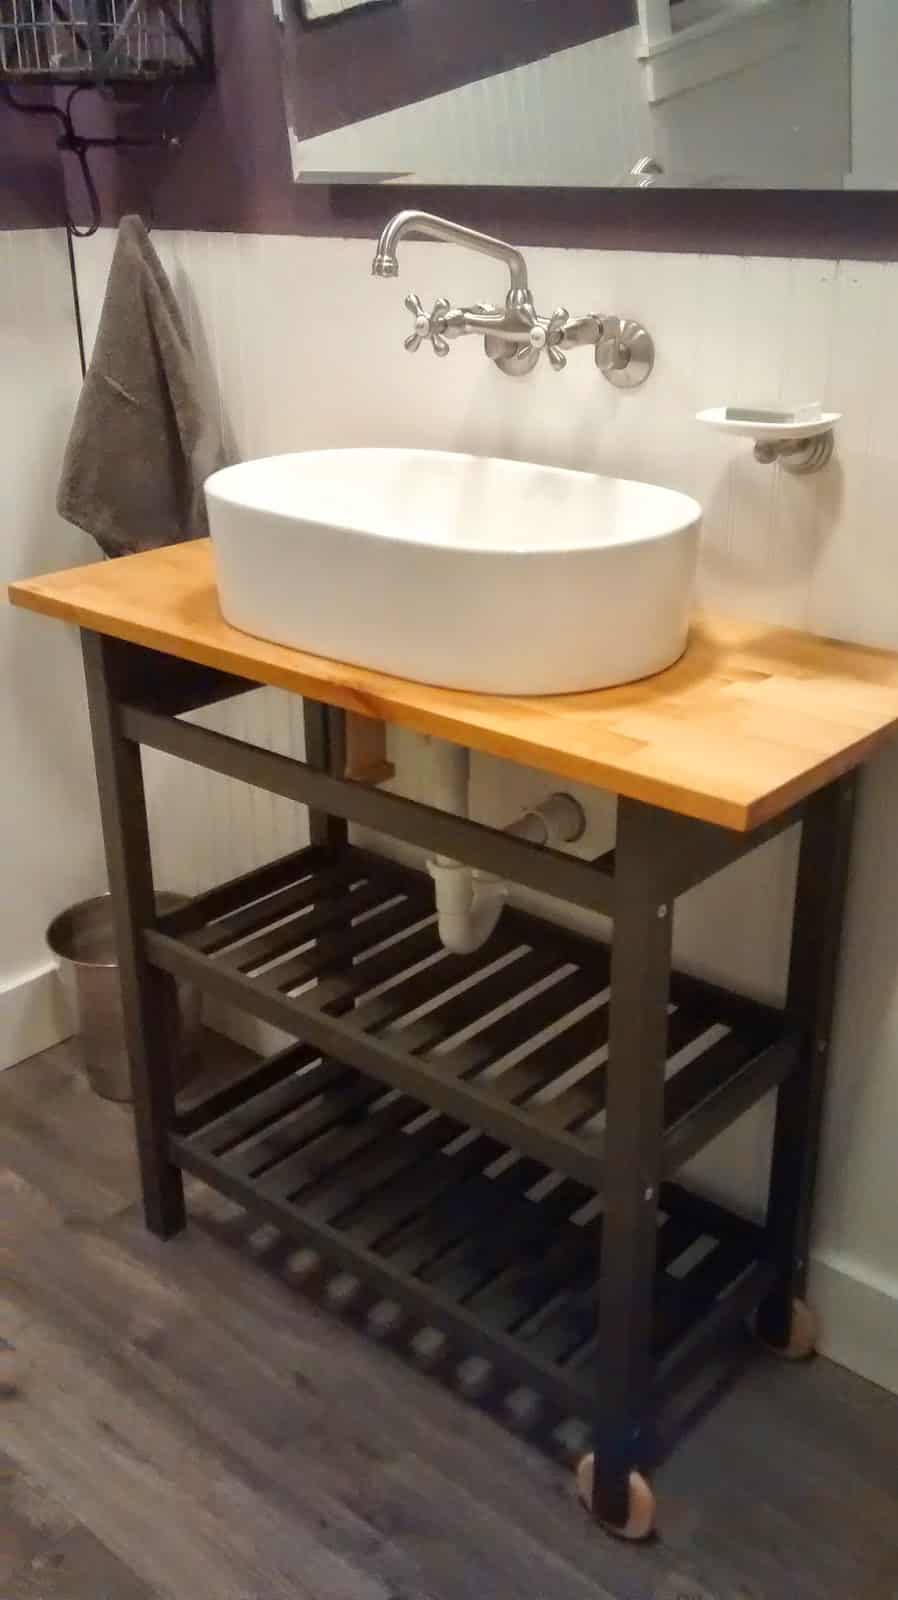 13 Awesome IKEA bathroom hacks that will save you a ton a money! #bathroom #ikeahacks #ikea #diy #homedecor